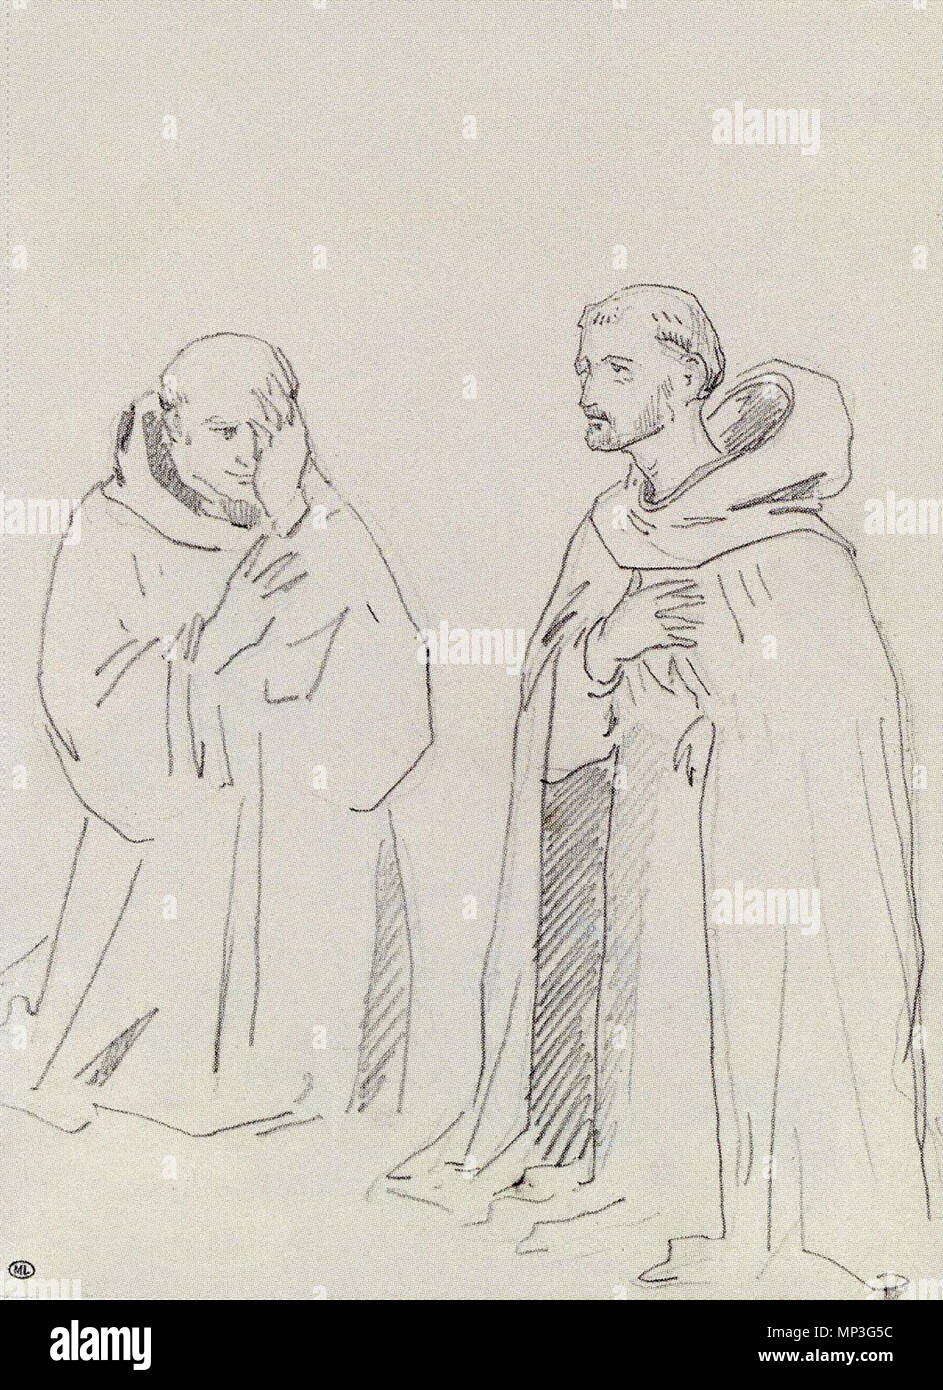 1288 Édouard Manet - Deux religieux agenouillés, saint Jean Gualbert et saint Pierre martyr Stock Photo